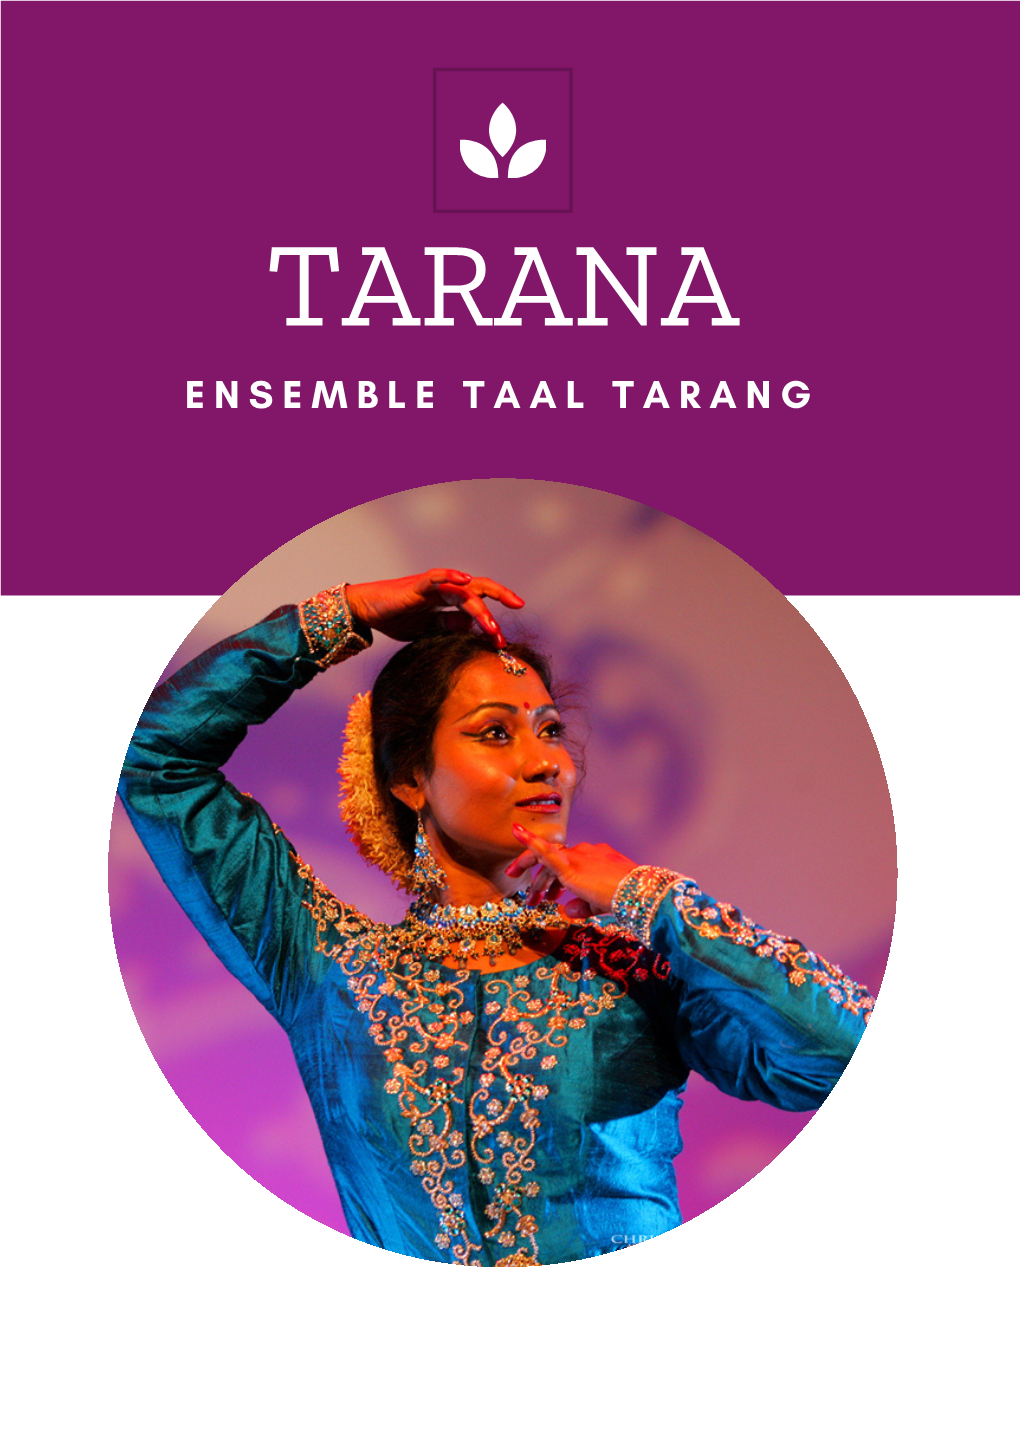 Ensemble Taal Tarang Déploie Sur Scène L'héritage Millénaire De La Danse Kathak, Danse Classique Du Nord De L'inde